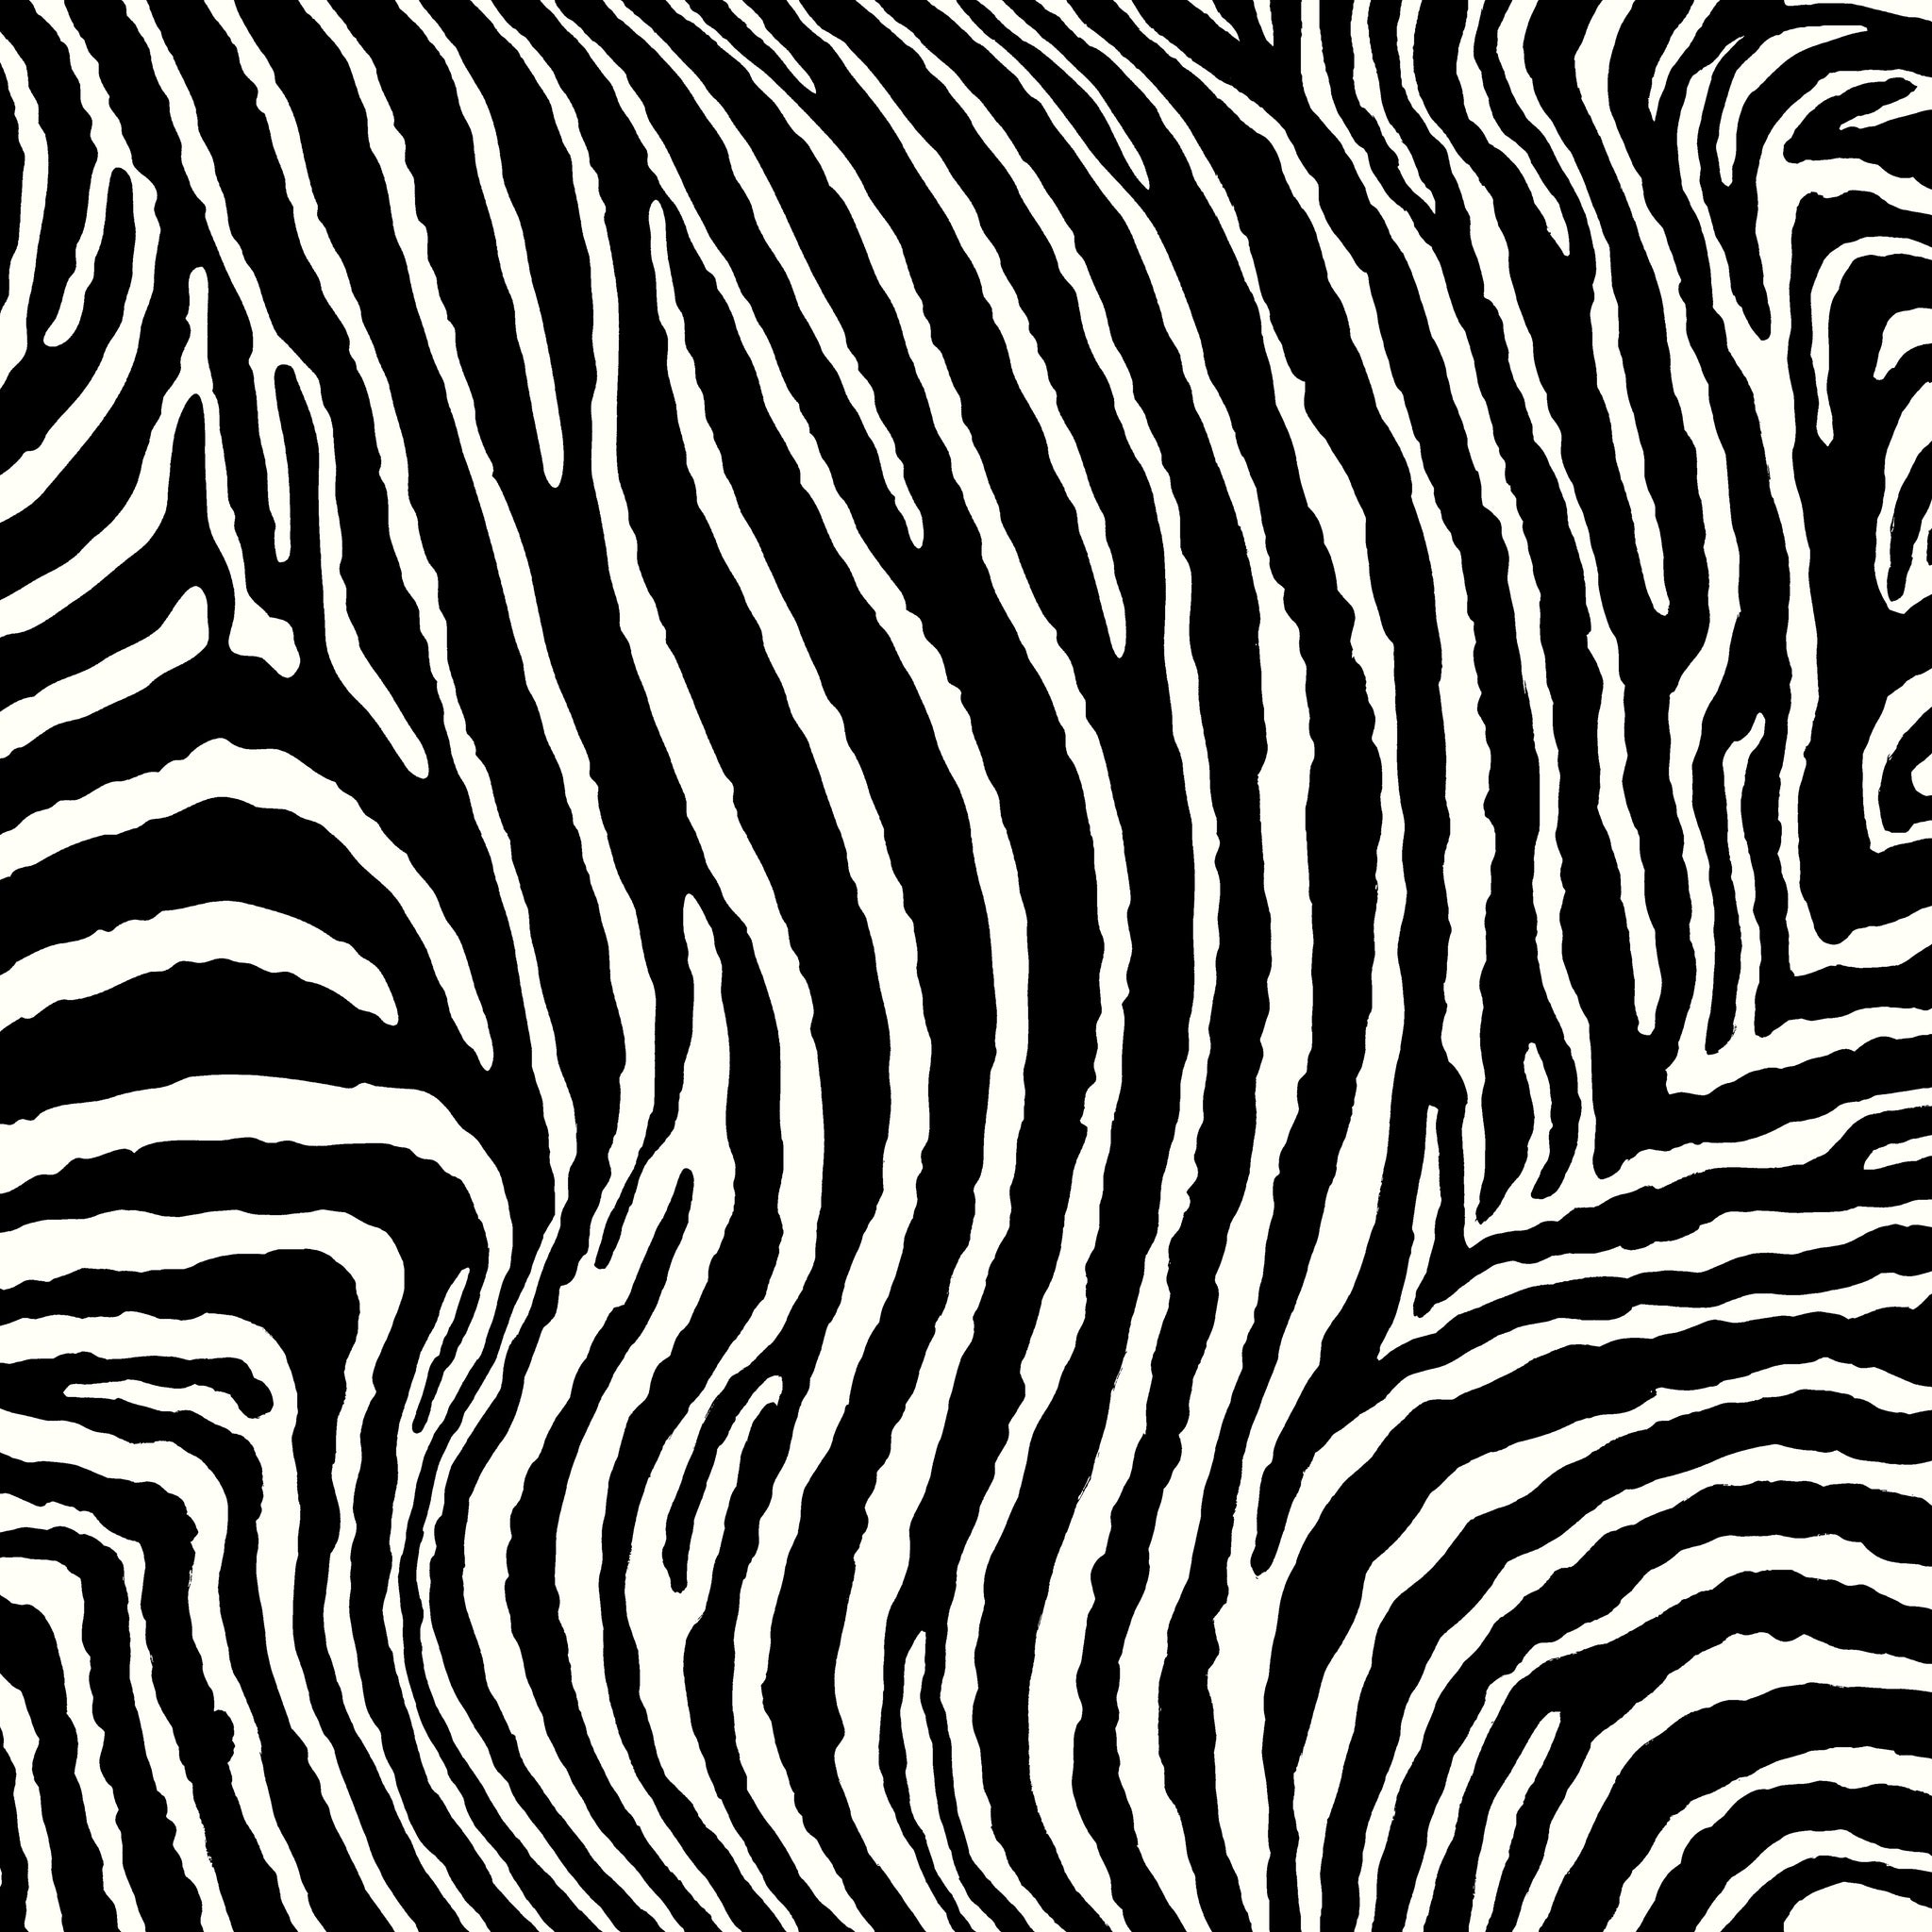 Zebra - Classic 1